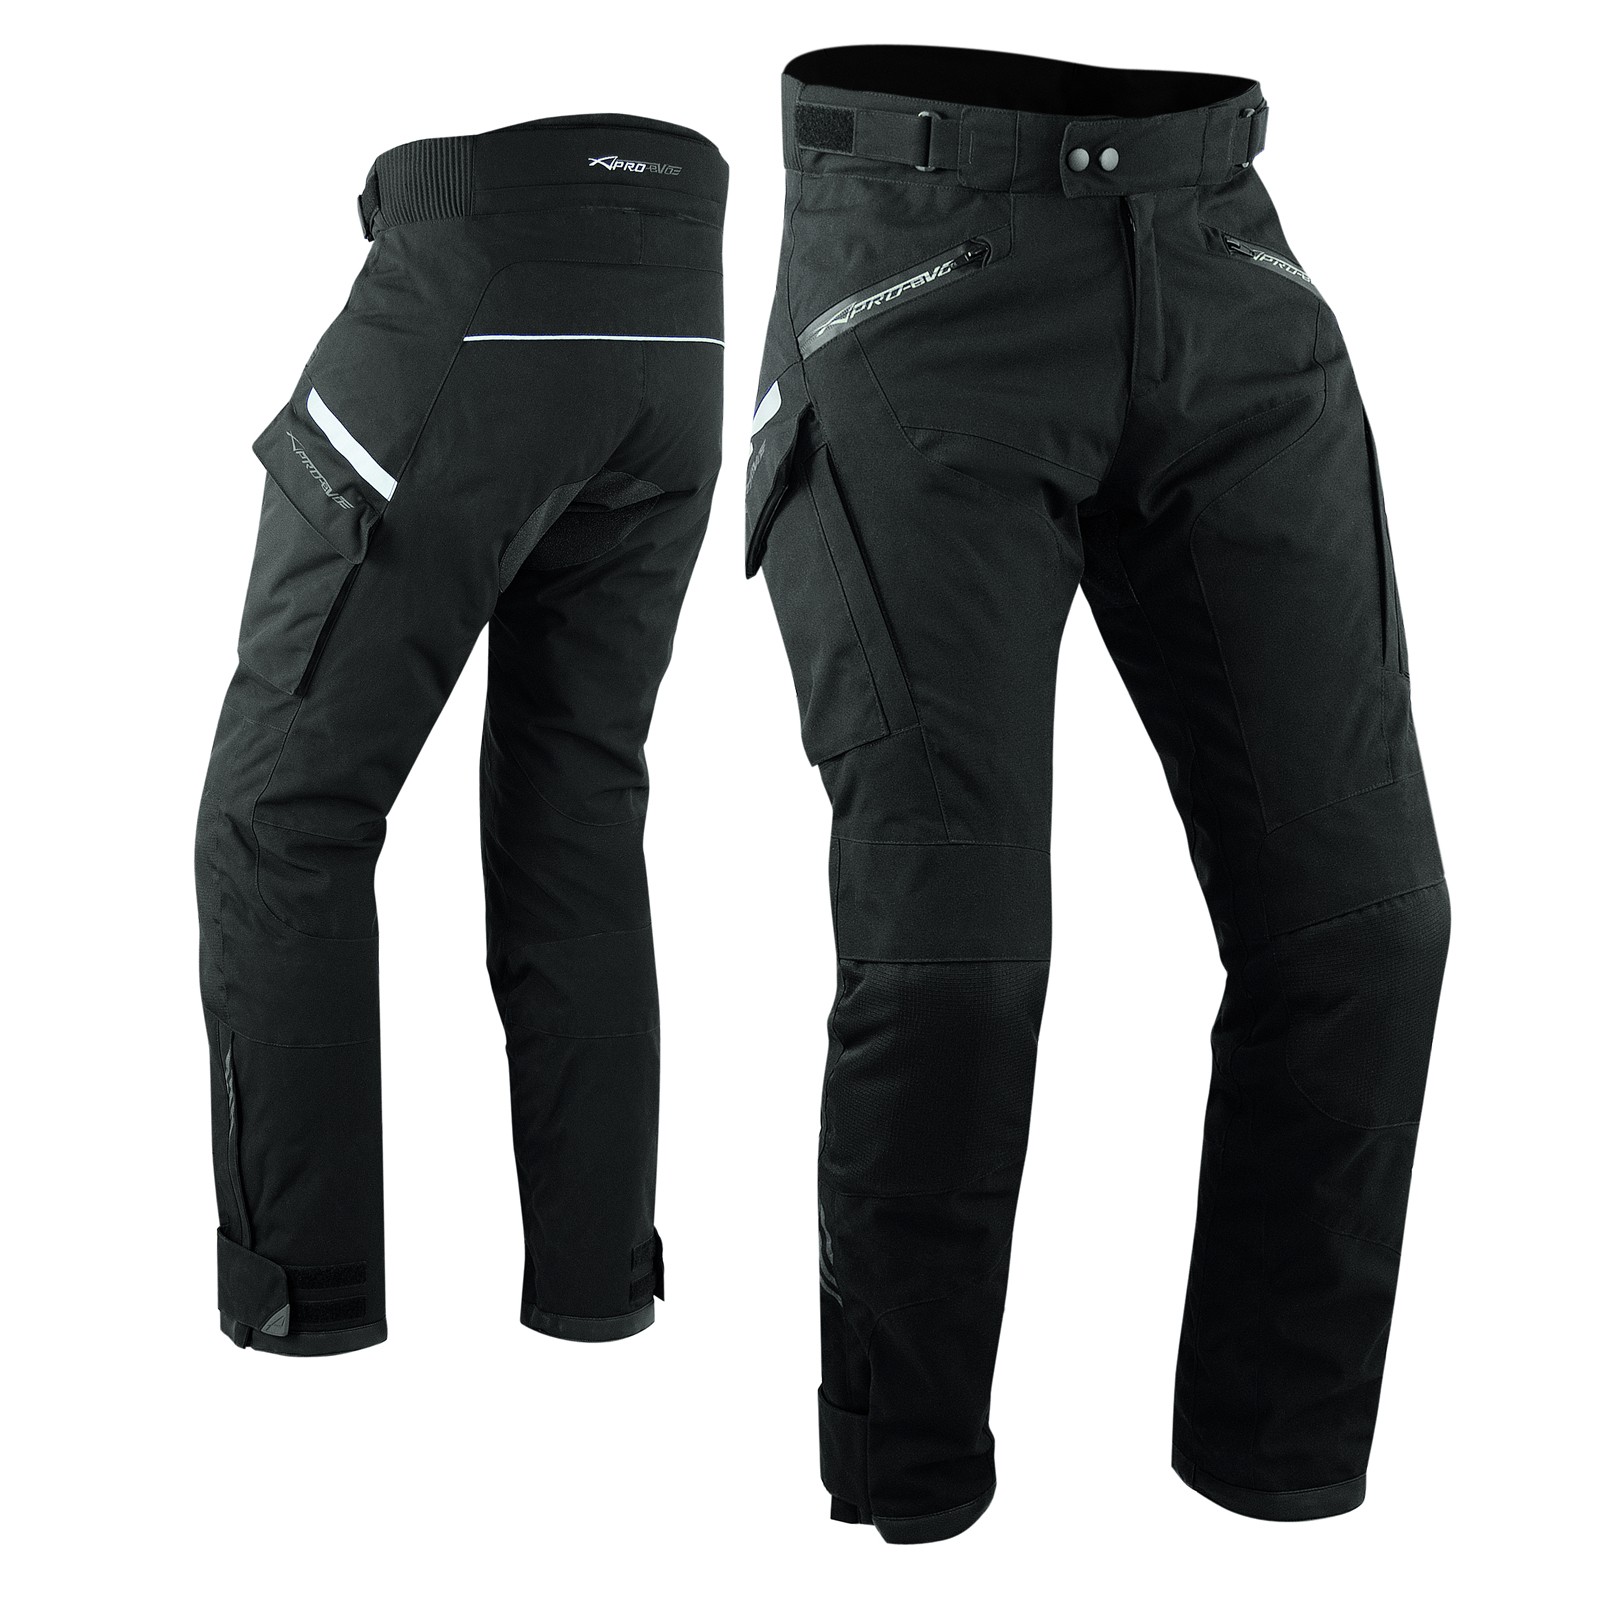 Abbigliamento Moto e Accessori - Pantaloni Moto Tessuto Nylon Tecnico 3  Strati Impermeabile Termico